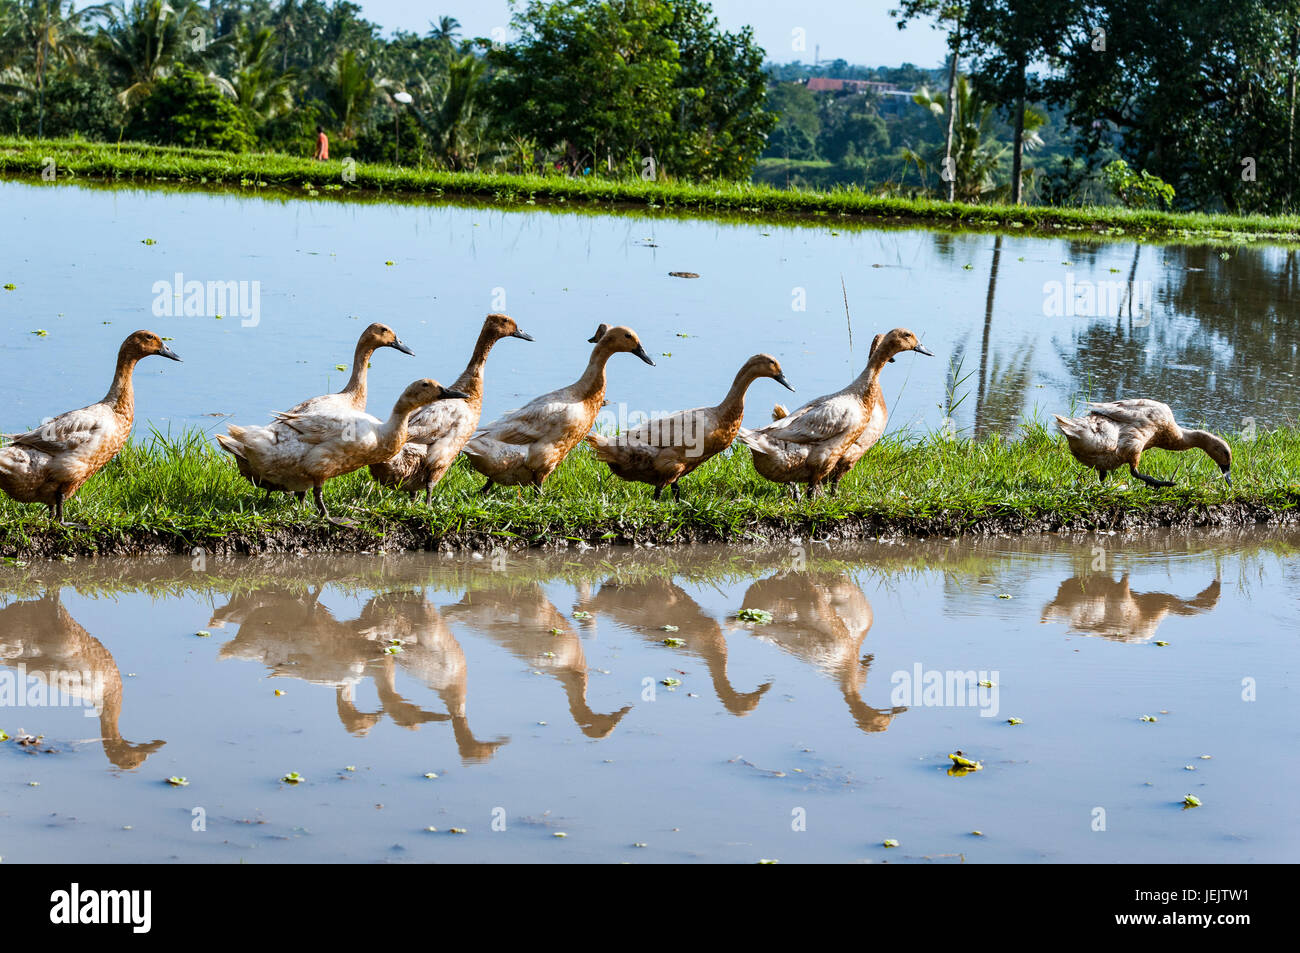 Ducks walking in the rice fields in Bali Stock Photo